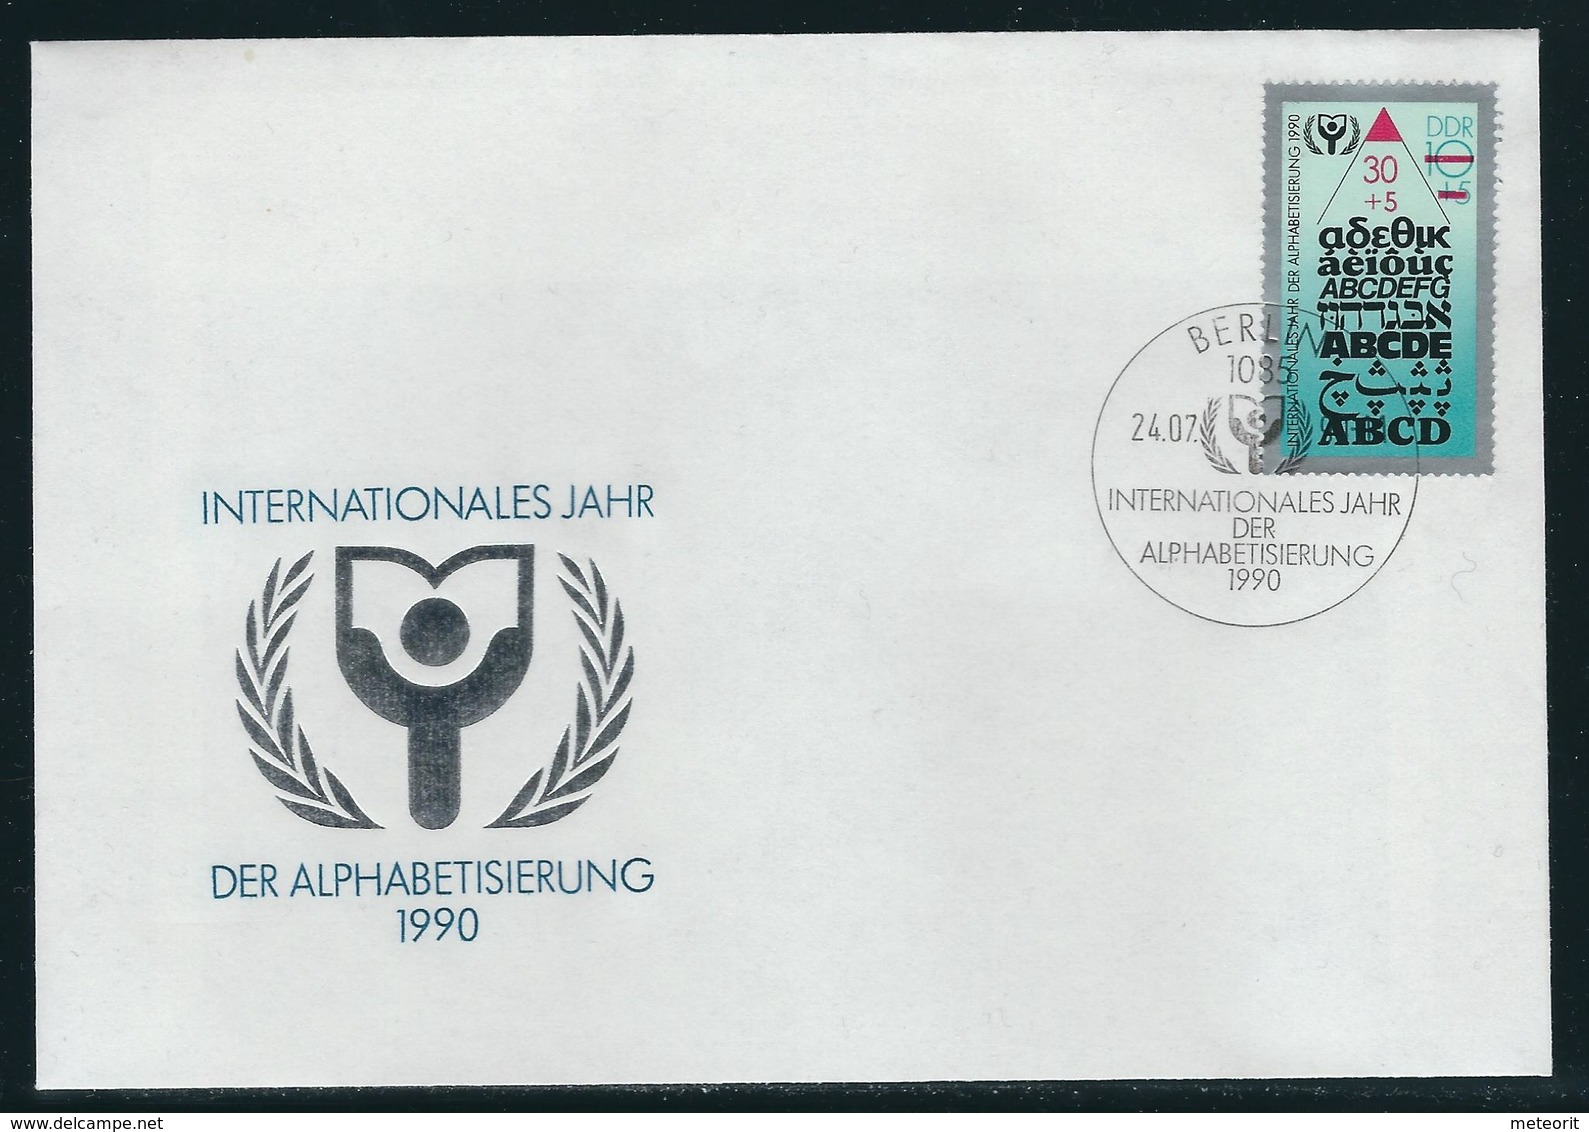 Ersttagsbrief Mit MiNr. 3353 (EF) Mit Ersttagsstempel 1085 BERLIN 24.07.90-11 - 1981-1990